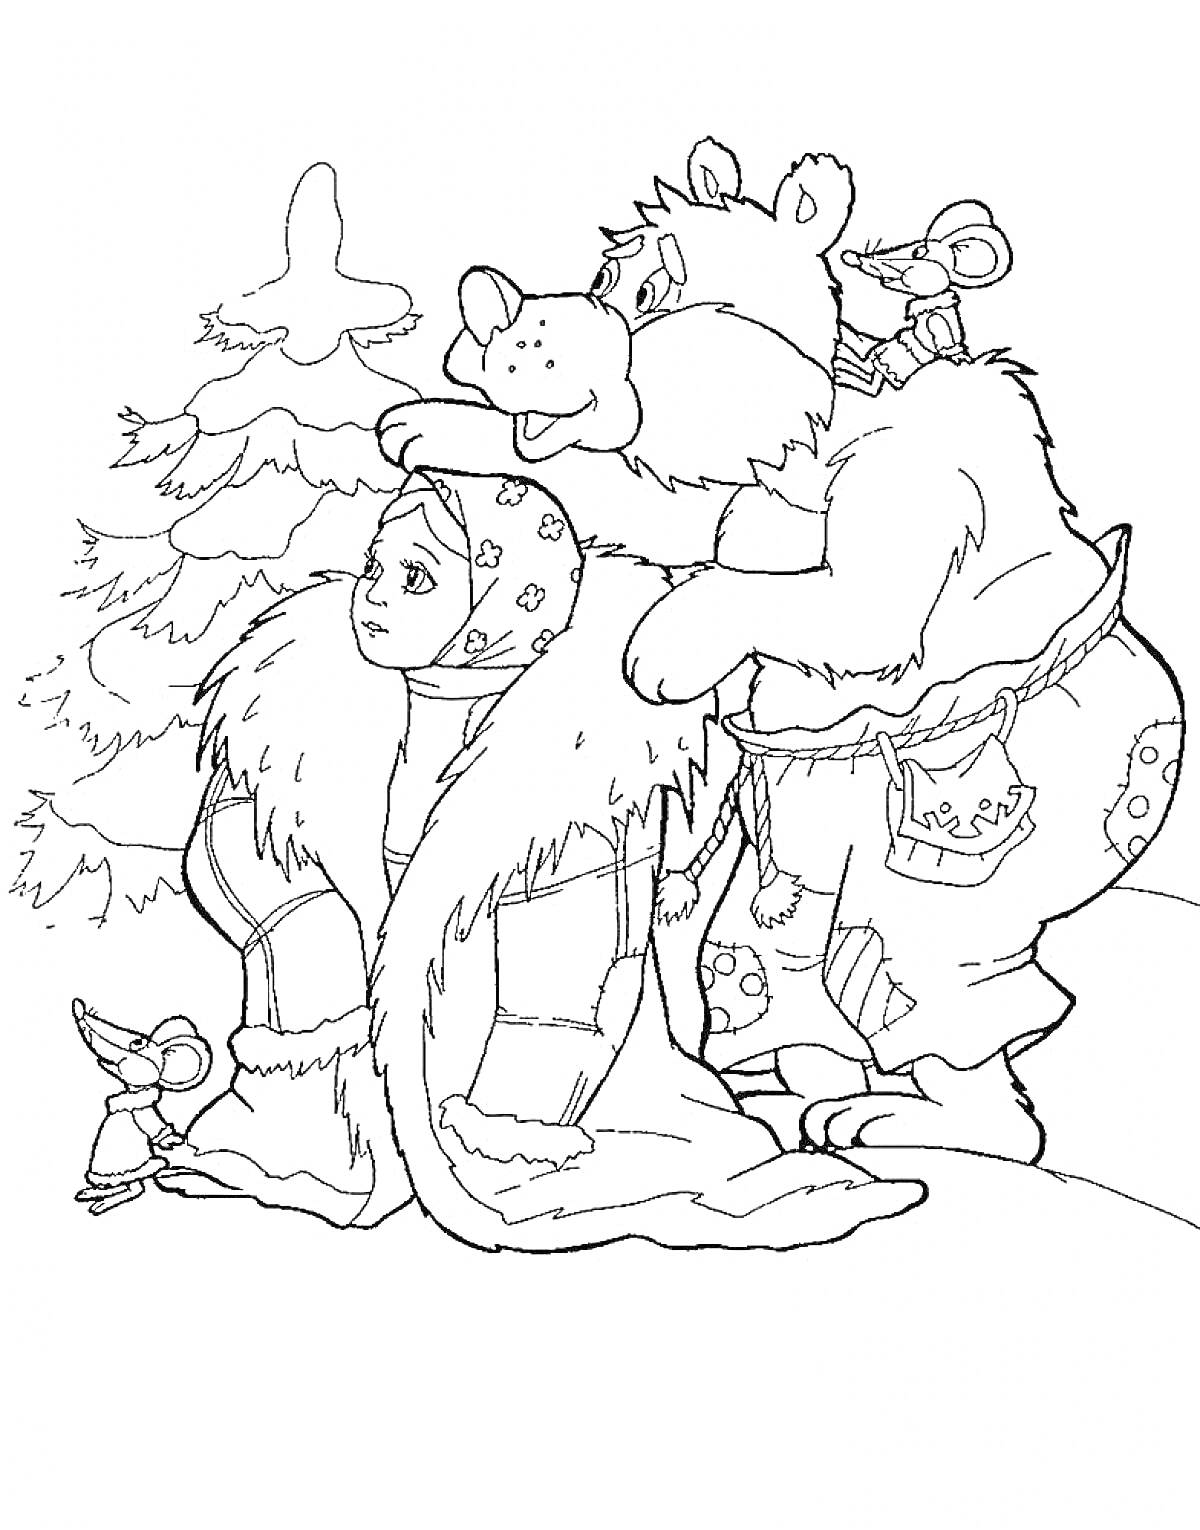 РаскраскаДевушка в зимней одежде и медведь с мышкой на зимнем фоне